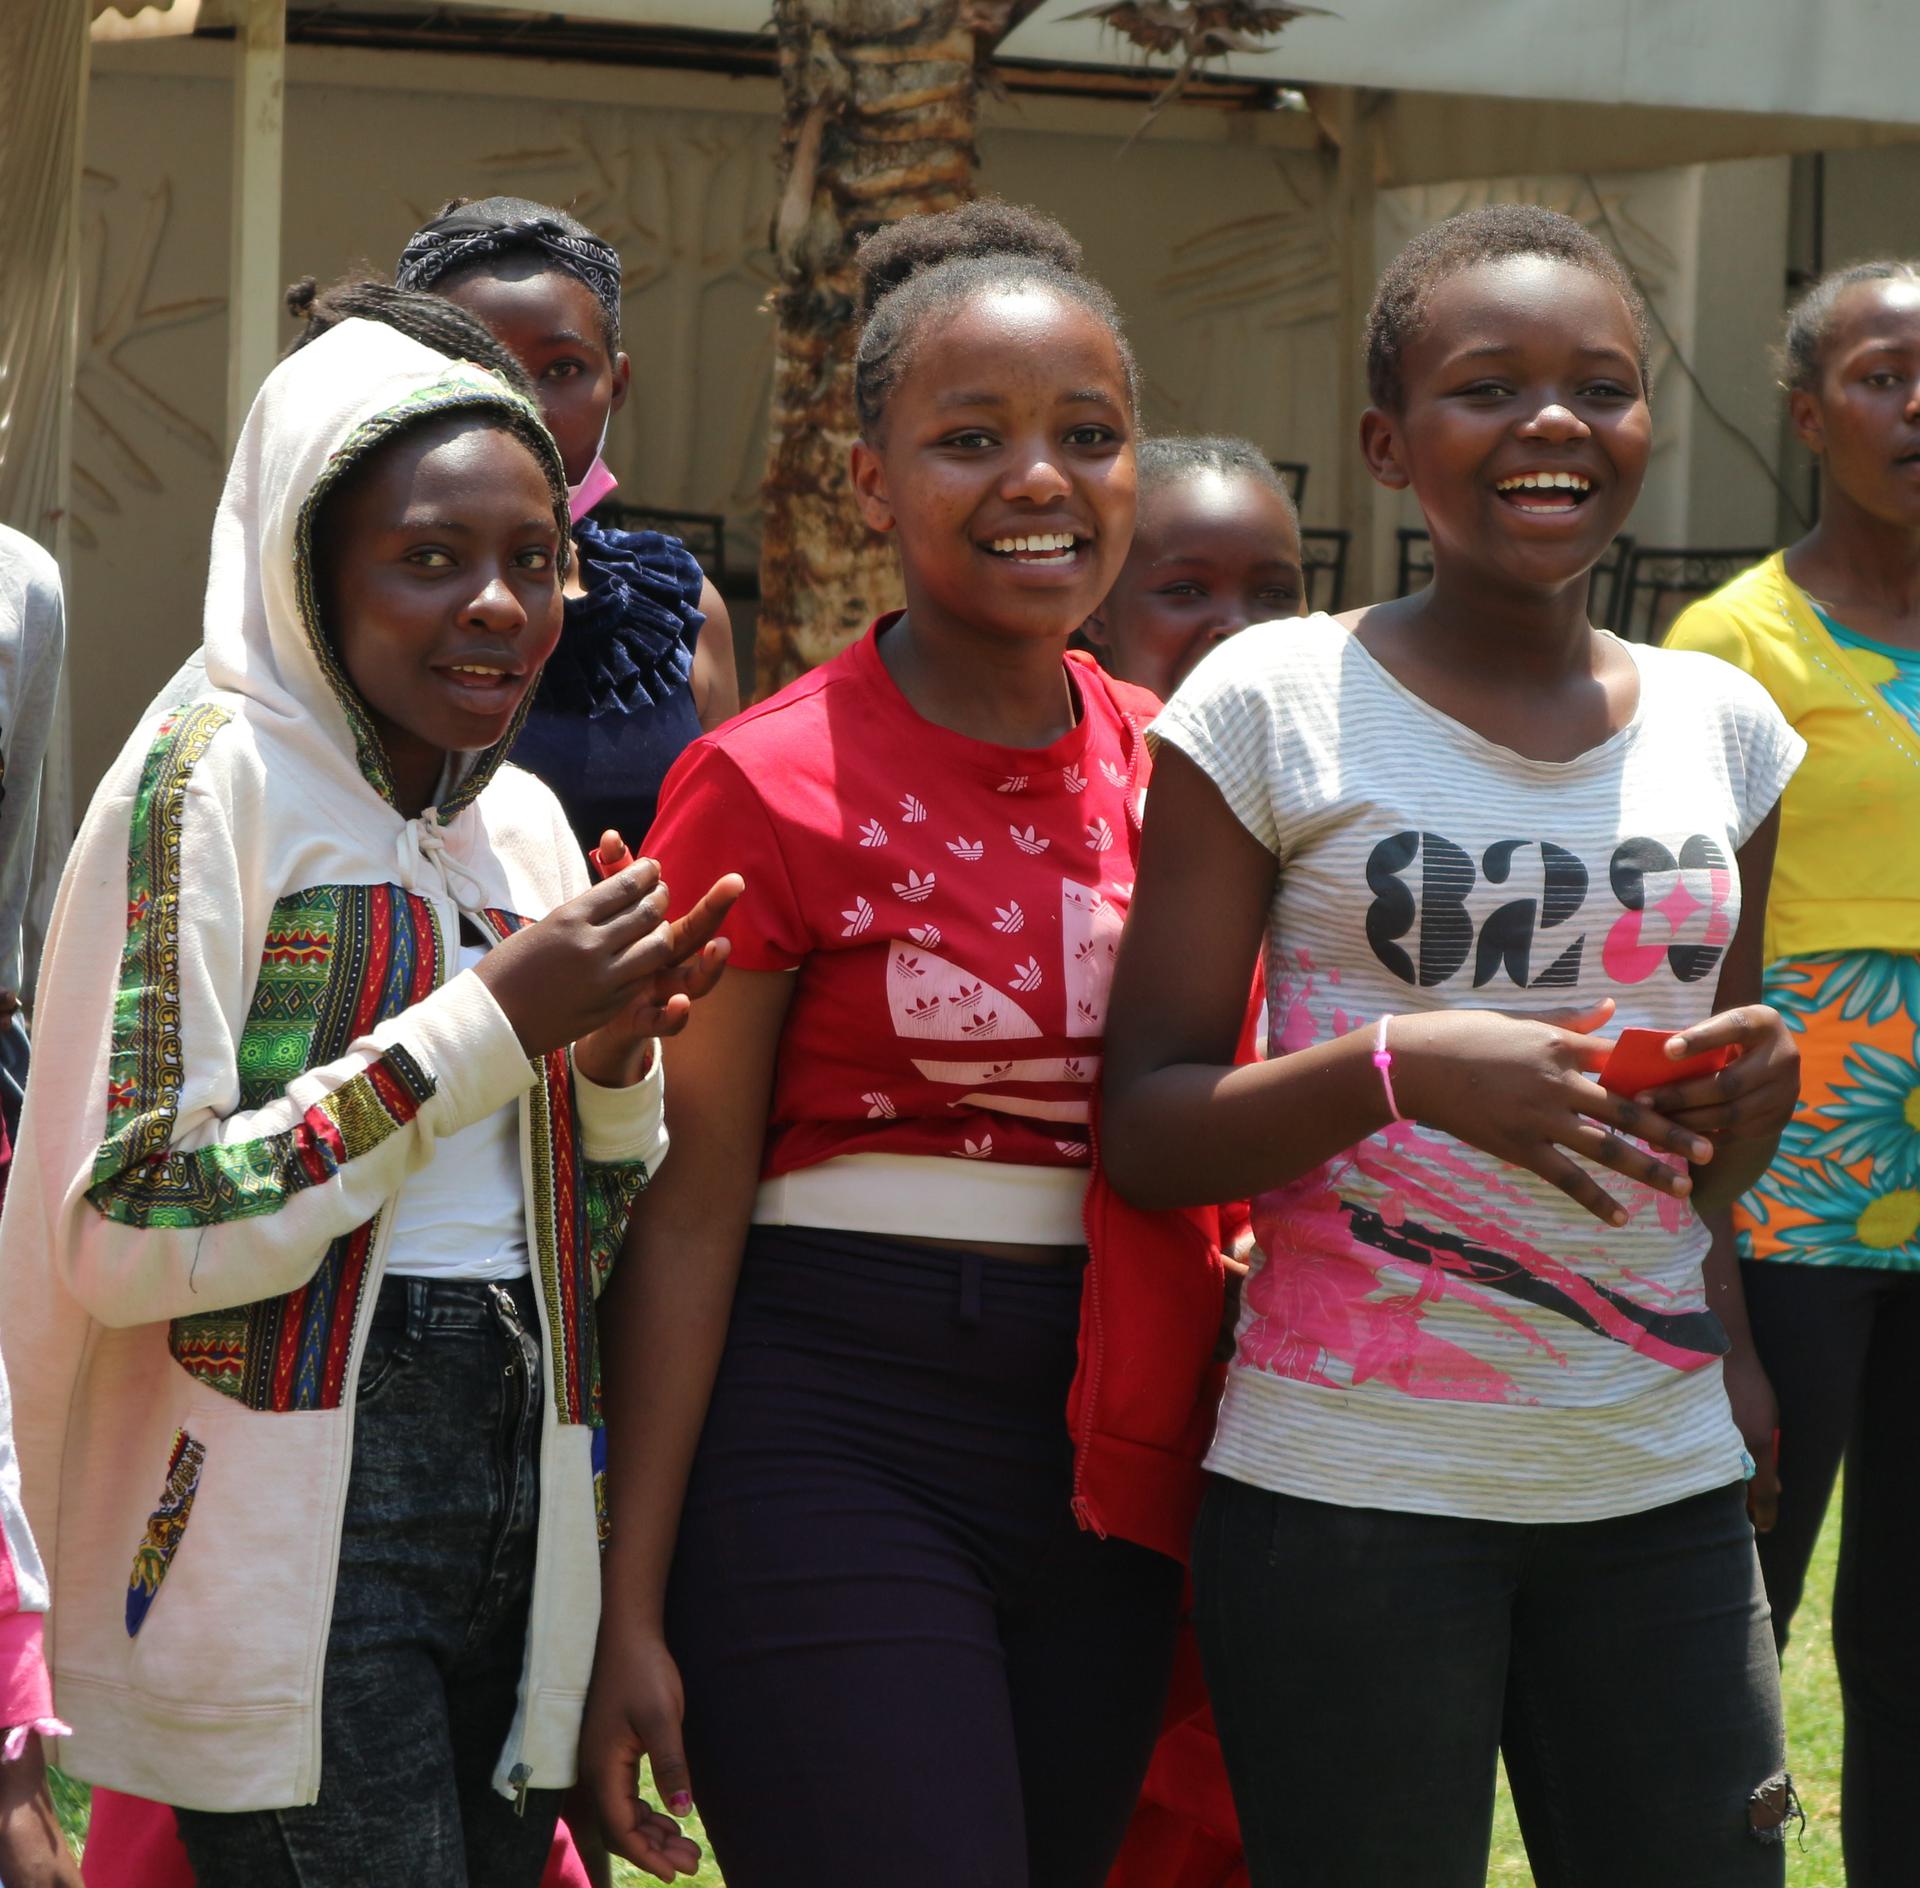 foto delle ragazze di Nairobi del progetto “Ragazze senza sosta” rivolto a 40 giovani ragazze